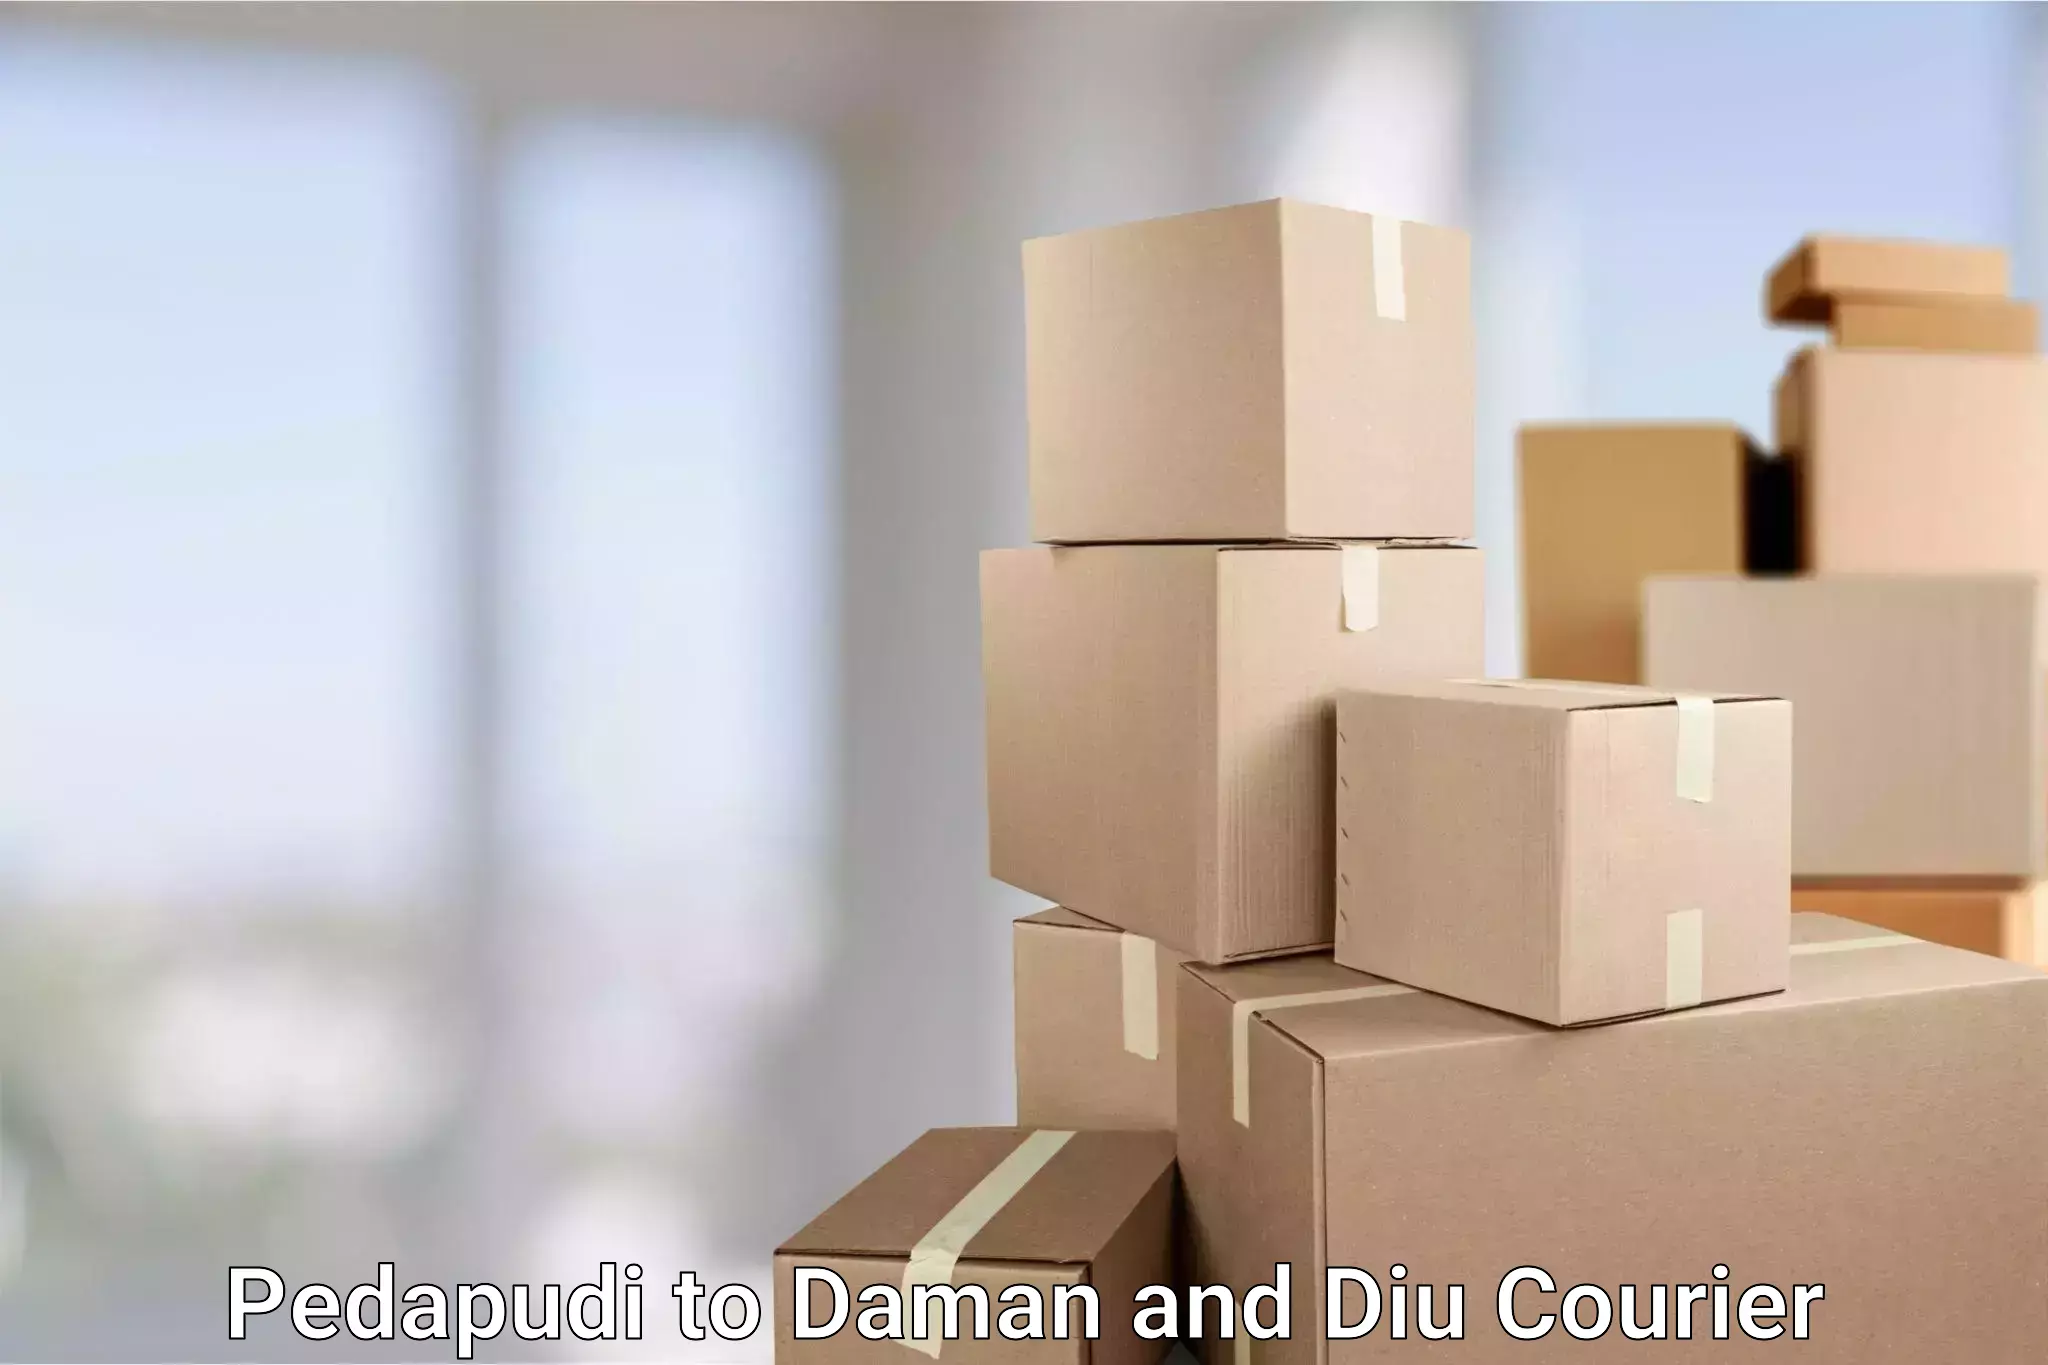 High-performance logistics Pedapudi to Daman and Diu